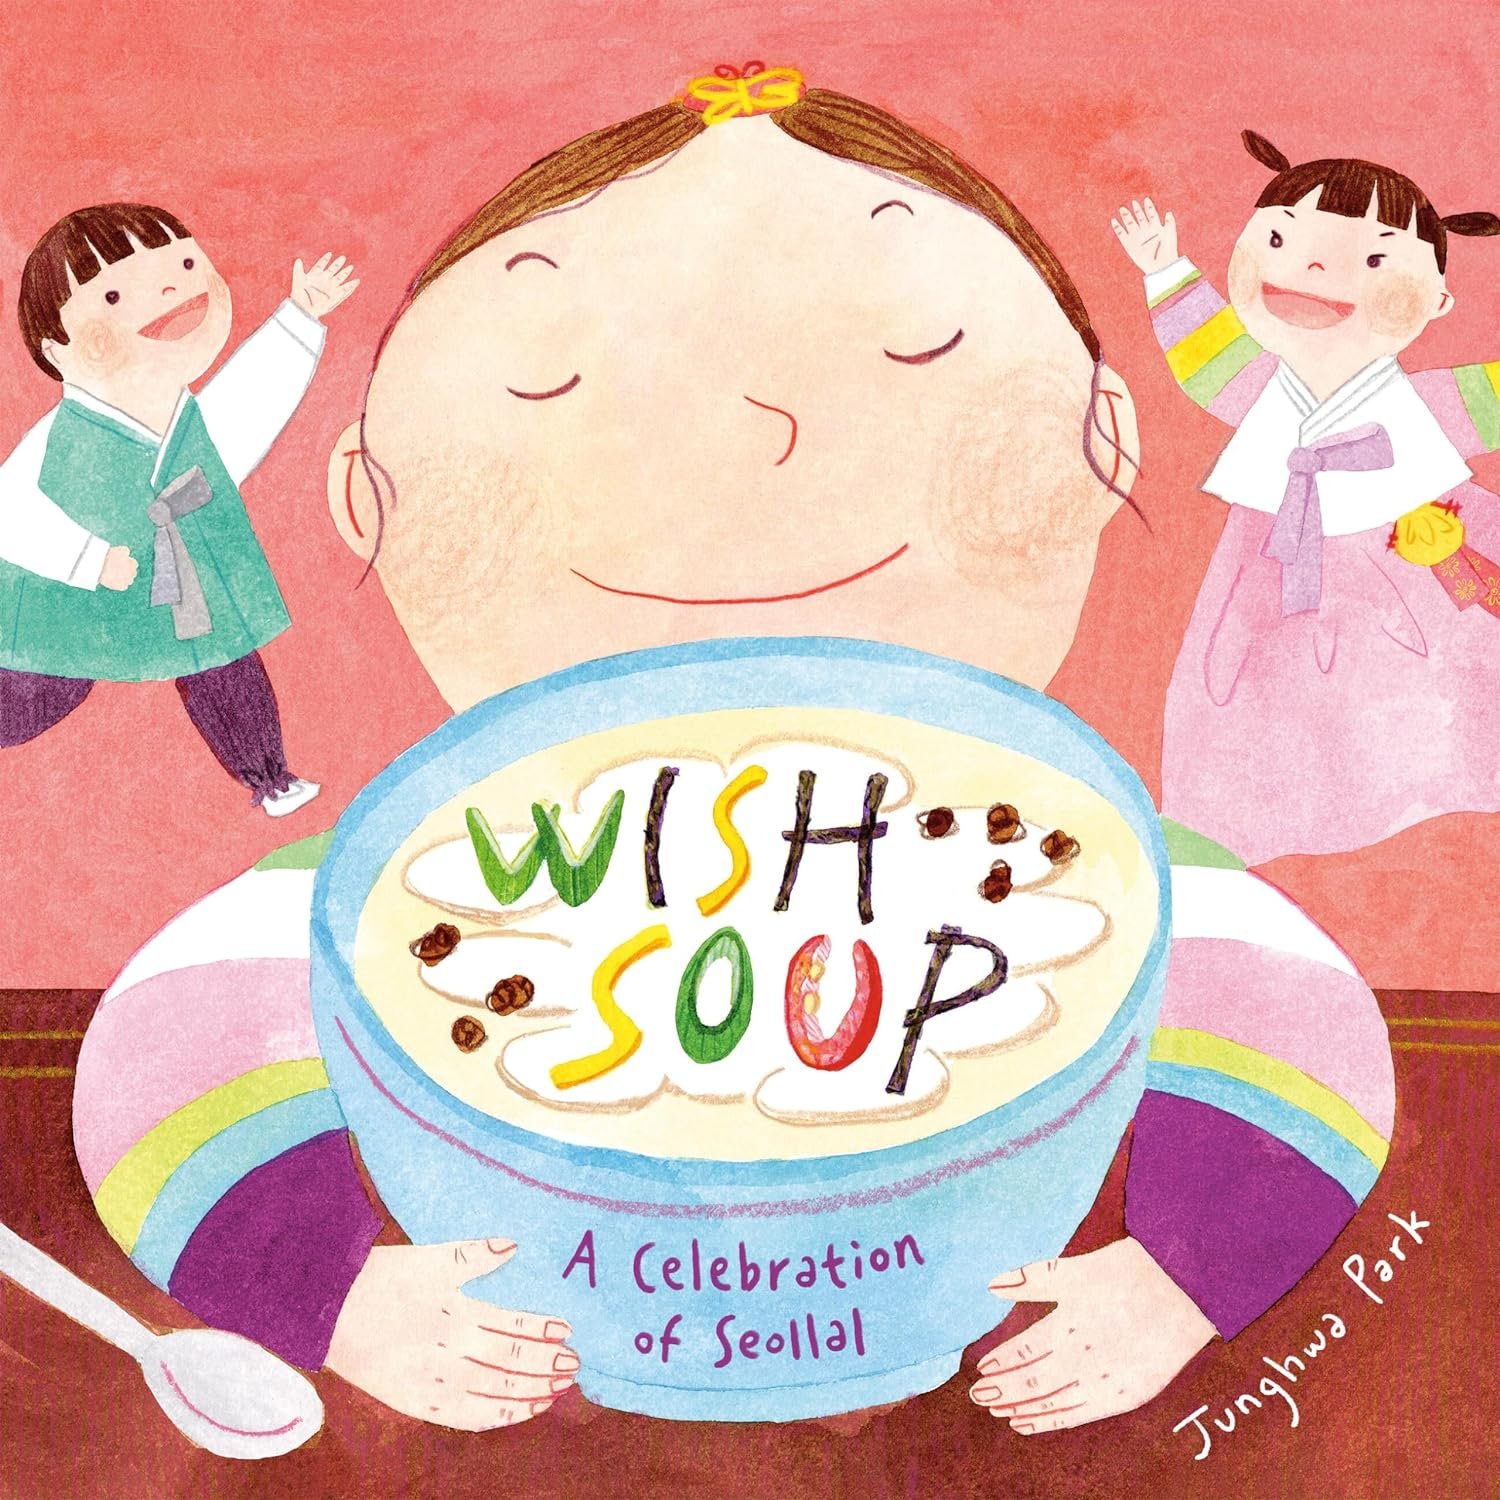 Wish Soup